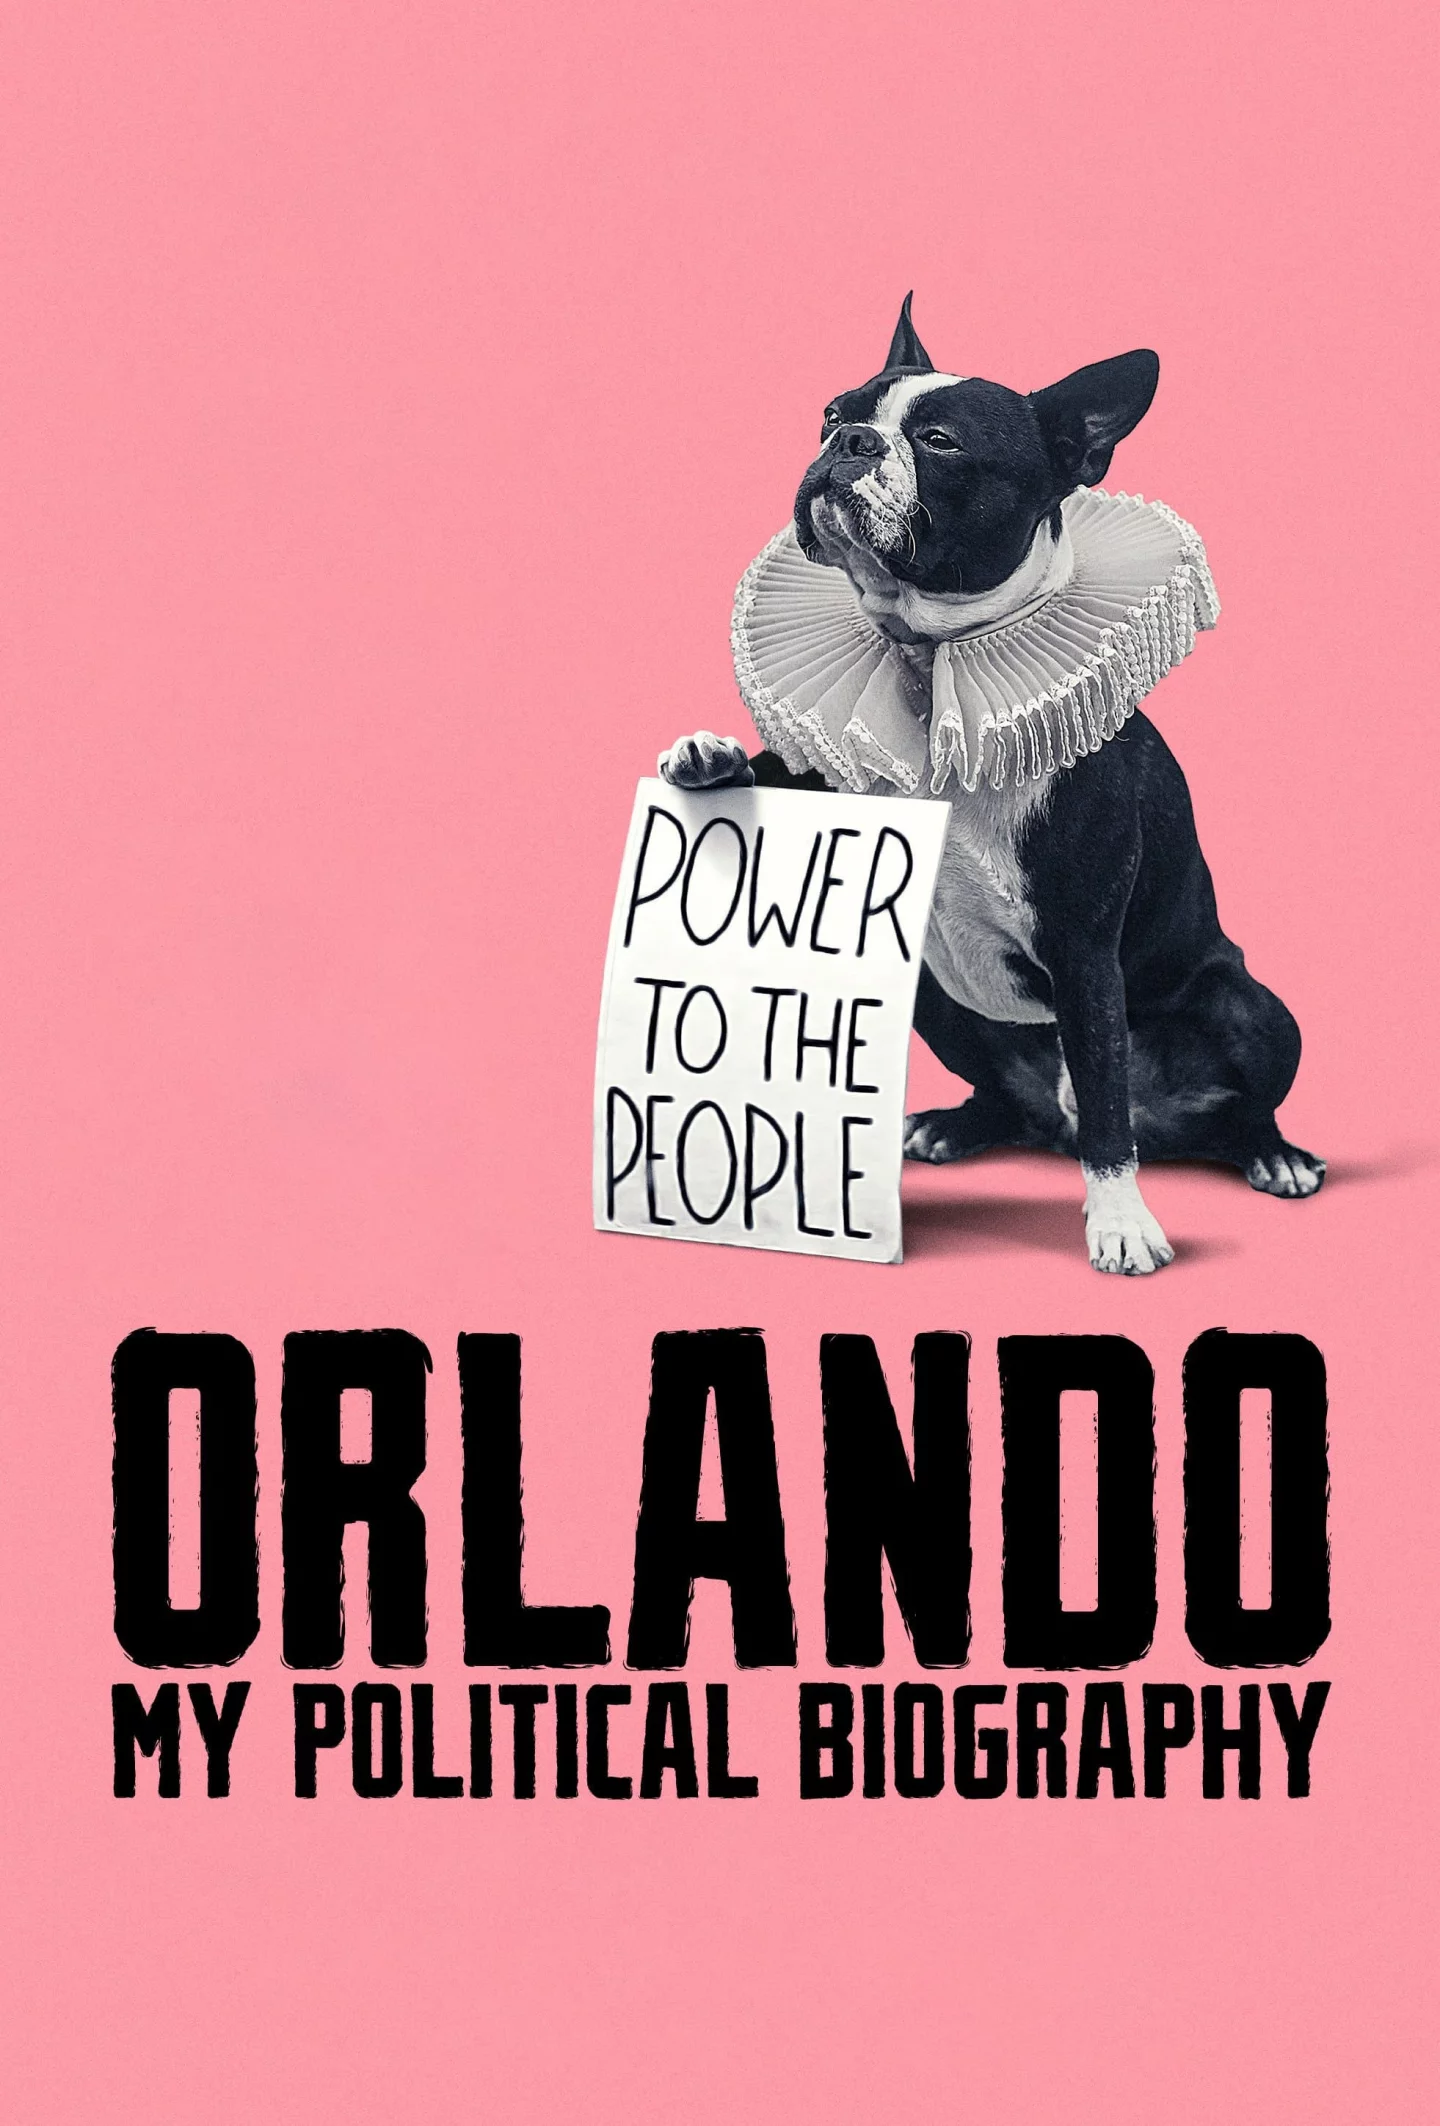 Photo du film : Orlando, ma biographie politique